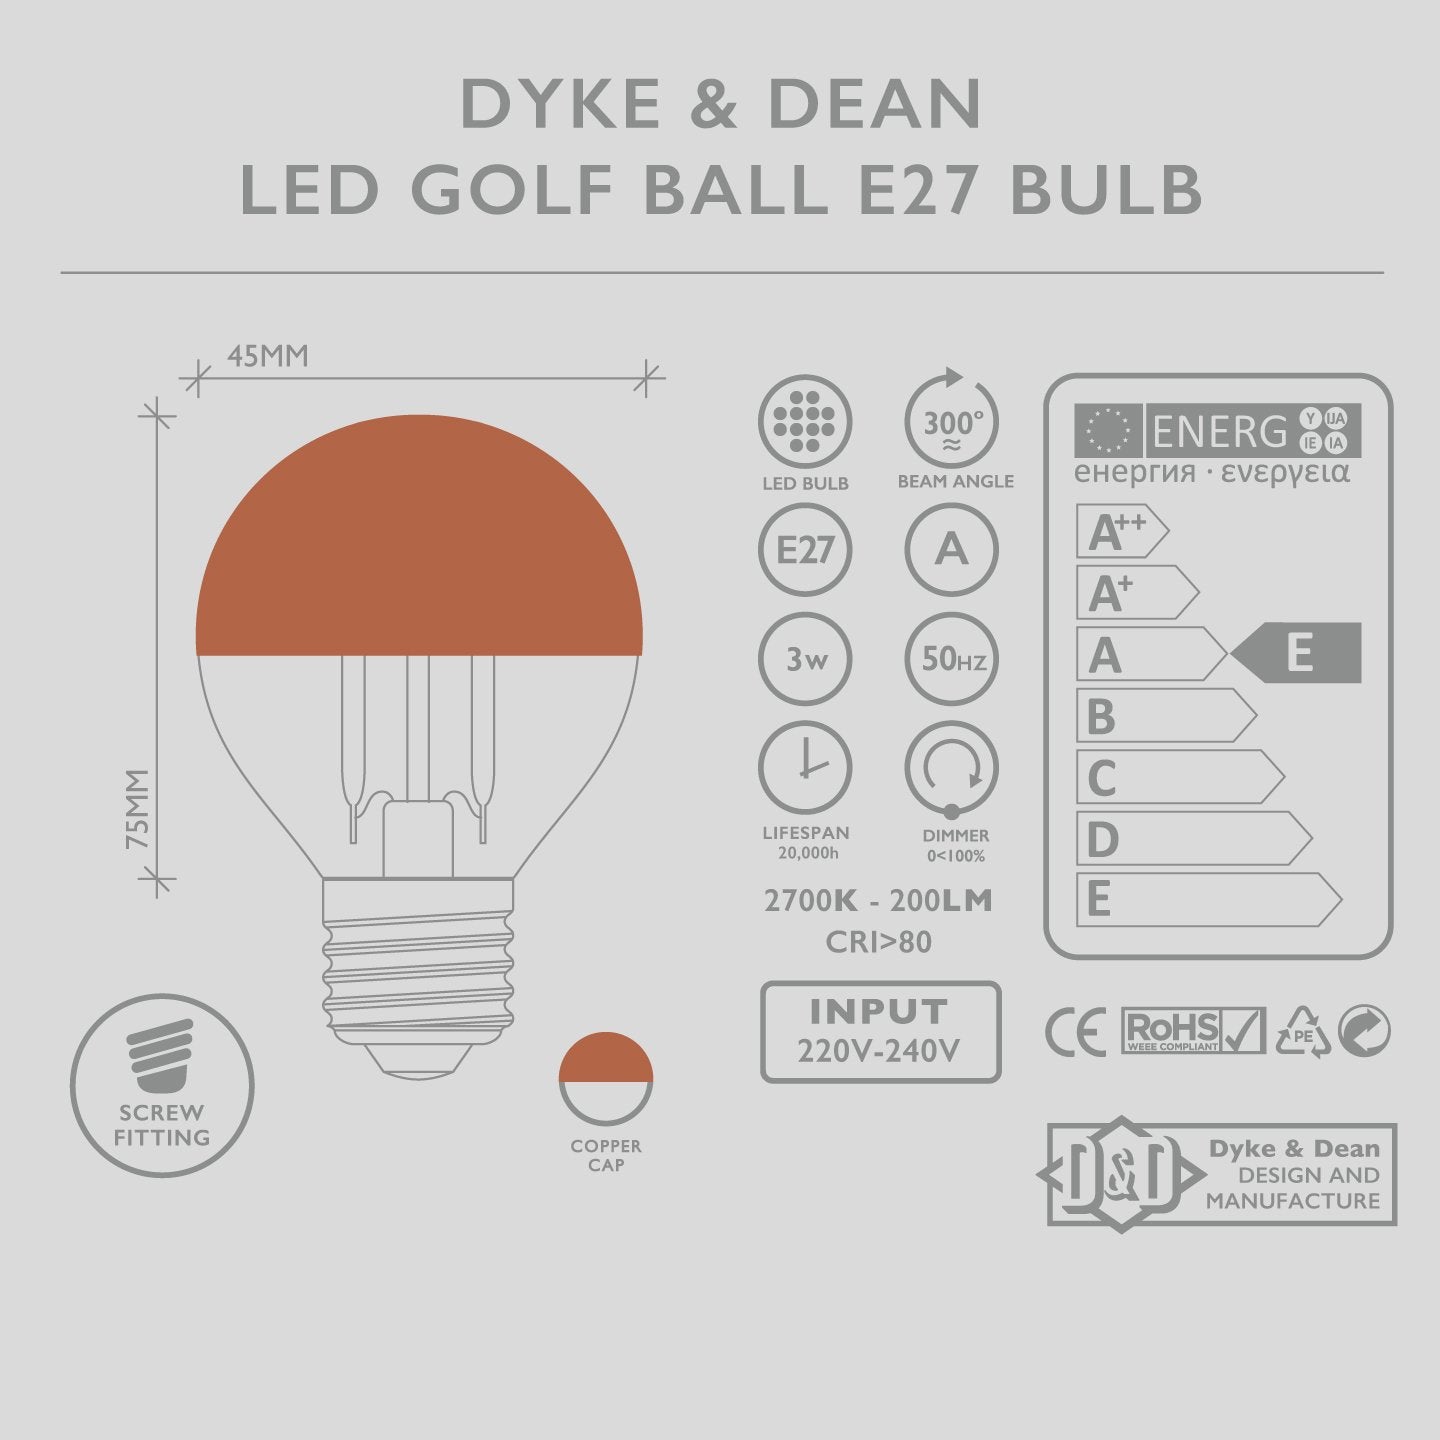 DYKE & DEAN LED COPPER CAP E27 GOLF BALL BULB - DYKE & DEAN